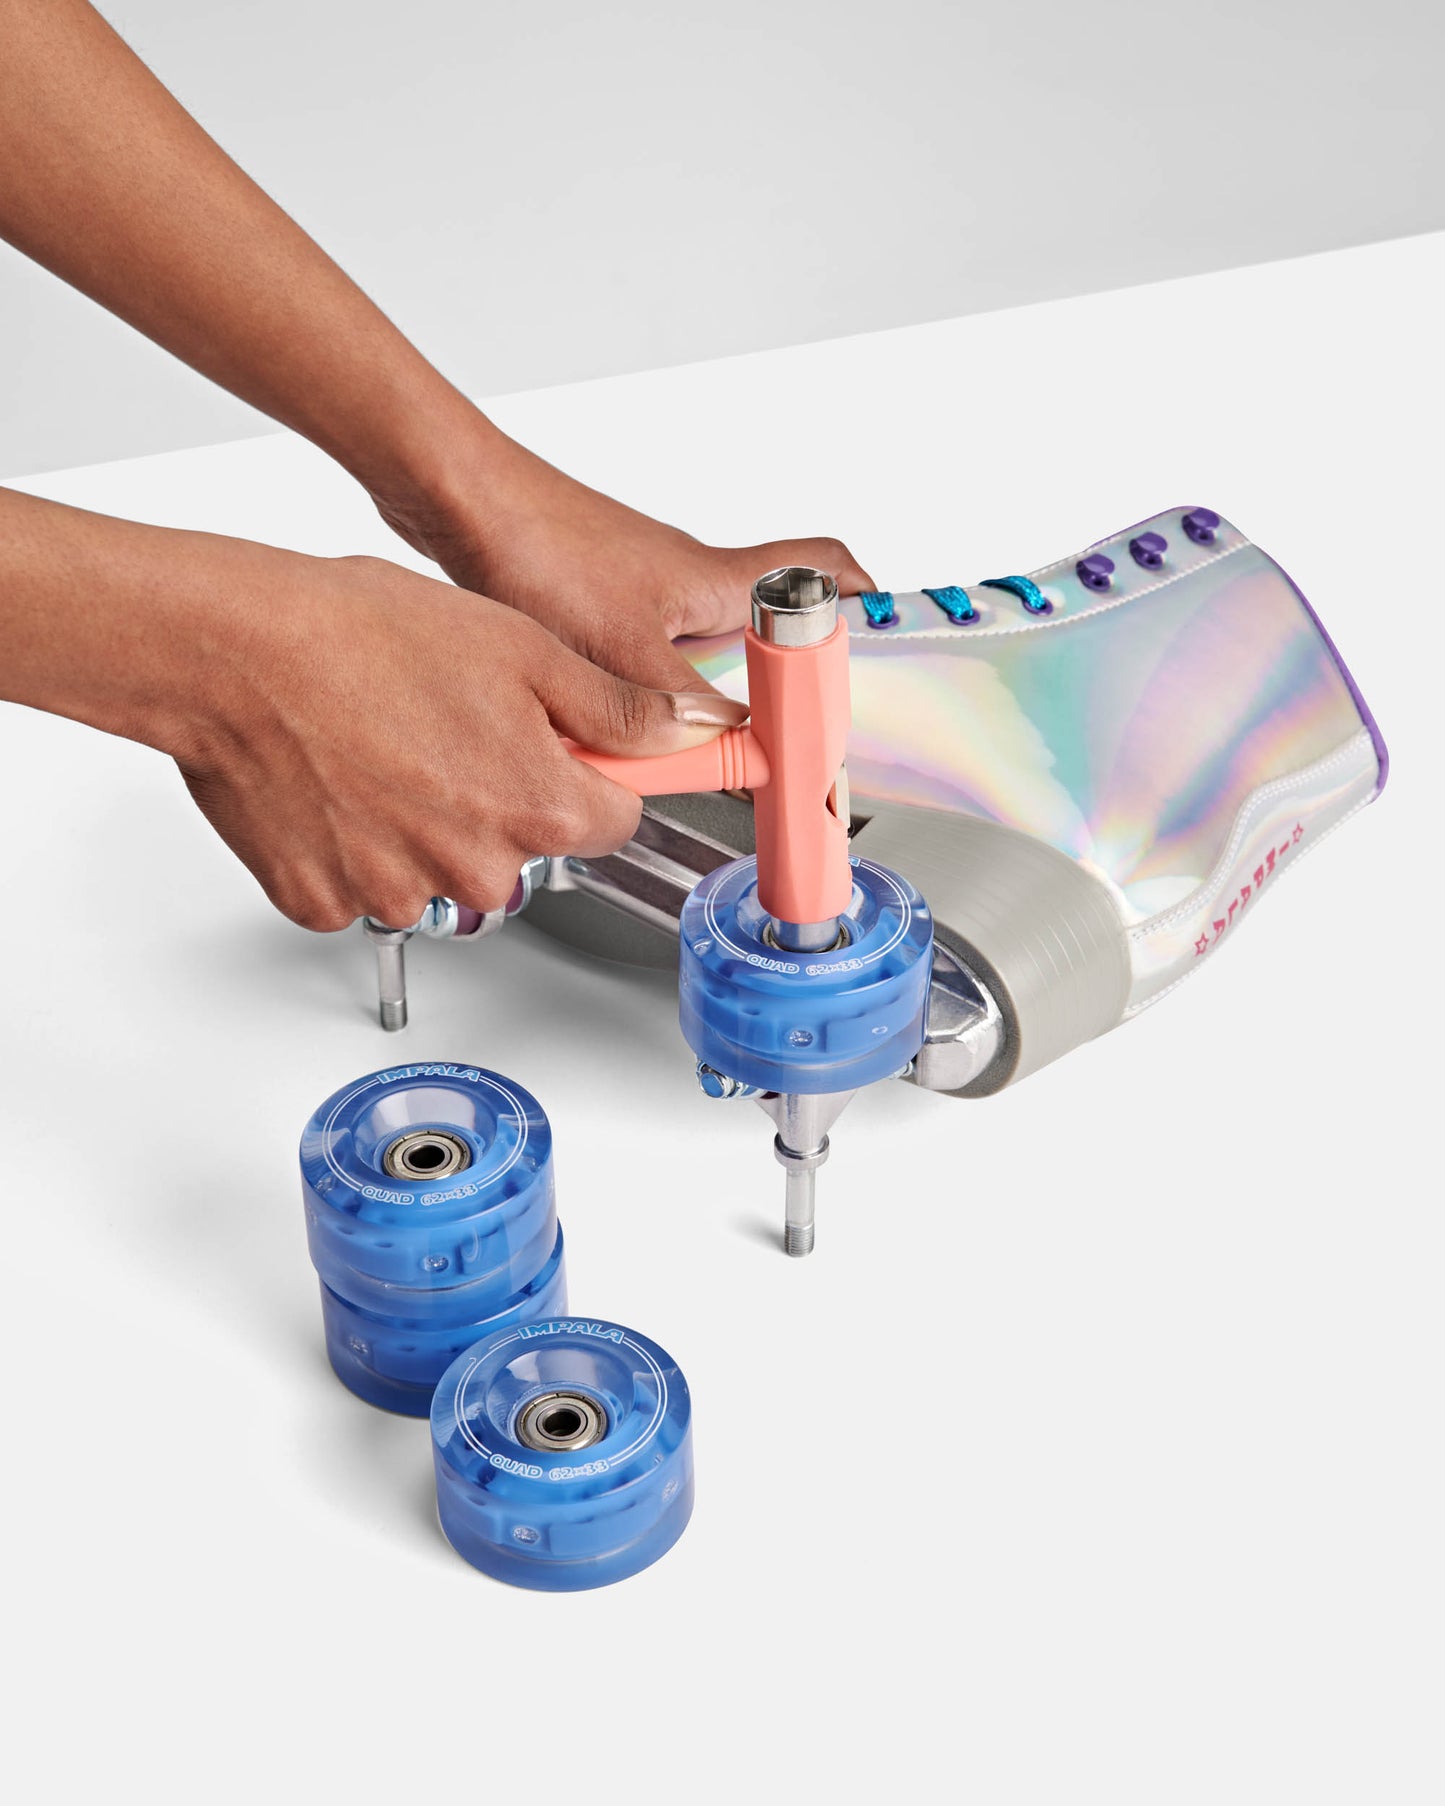 installing blue LED Light up transparent impala roller skate wheels 